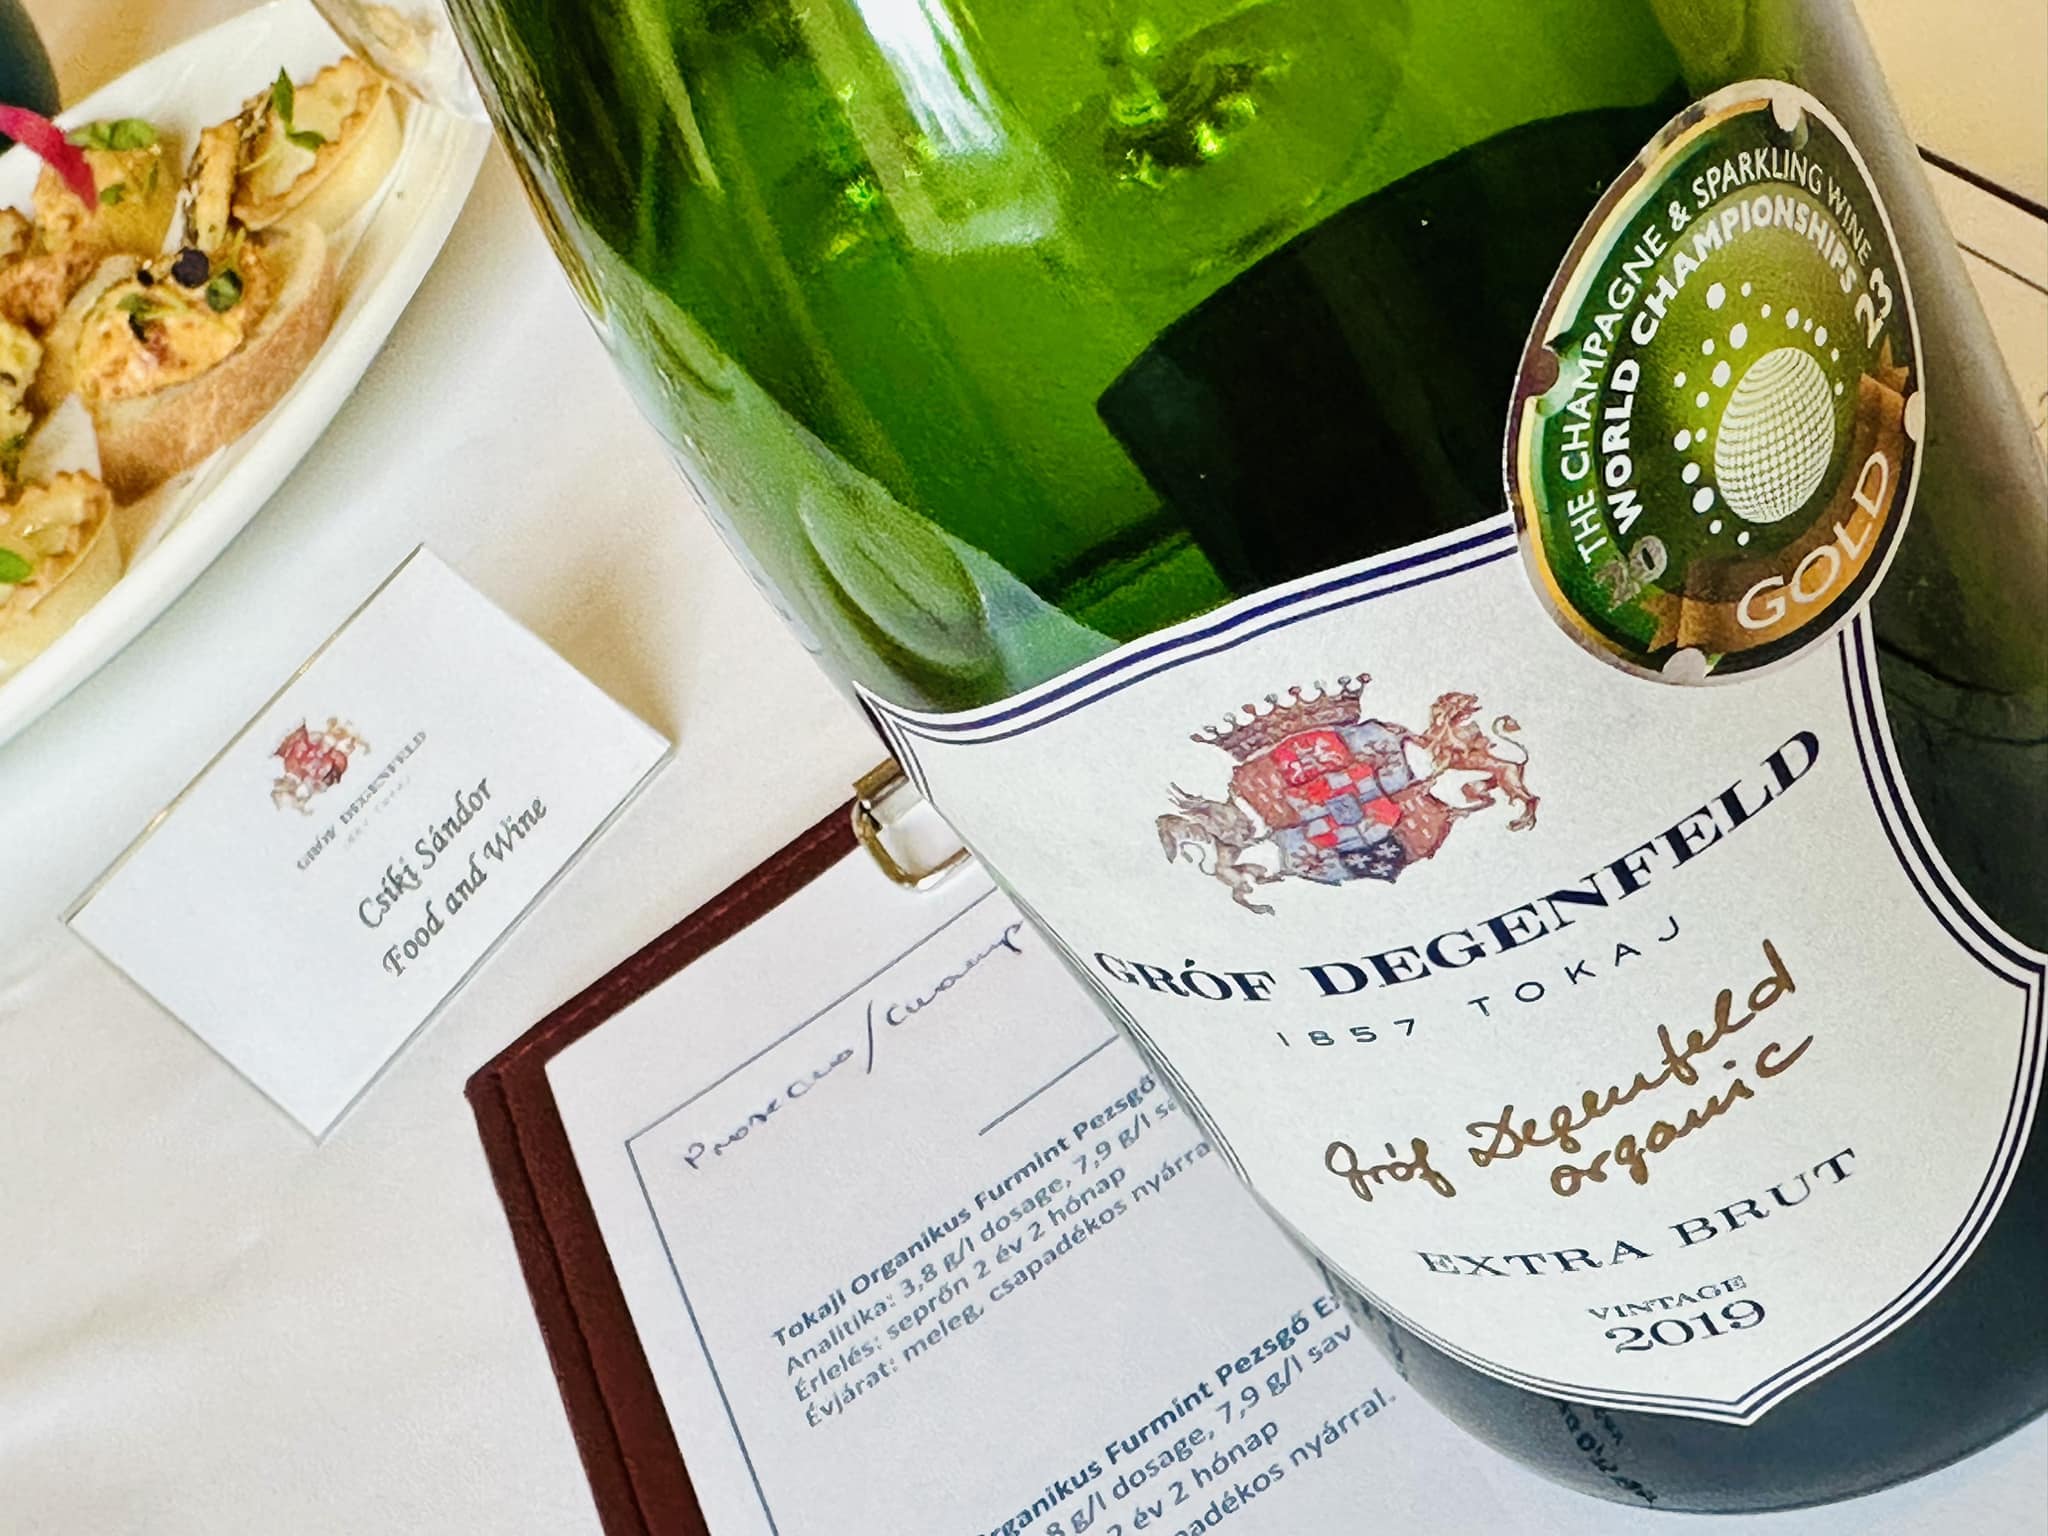 Wine pezsgő – | Food GRÓF díjnyertes & SZŐLŐBIRTOK DEGENFELD